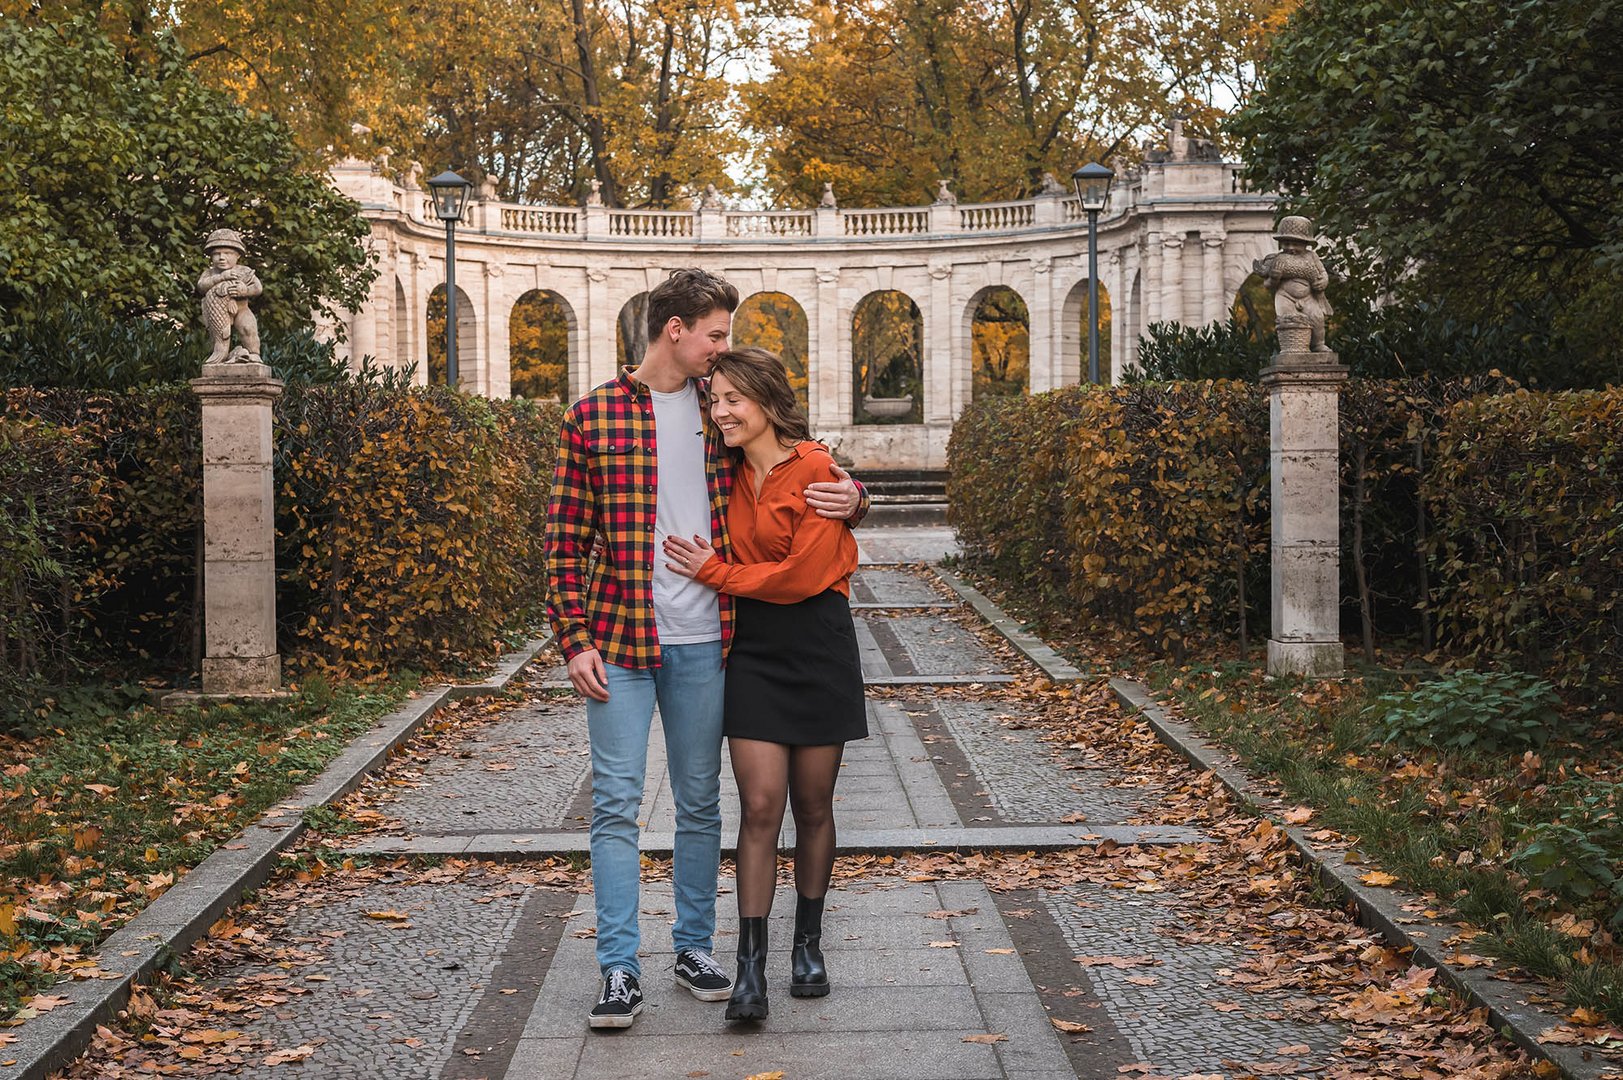  Verlobungsshooting im herbstlichen Volkspark Friedrichshain